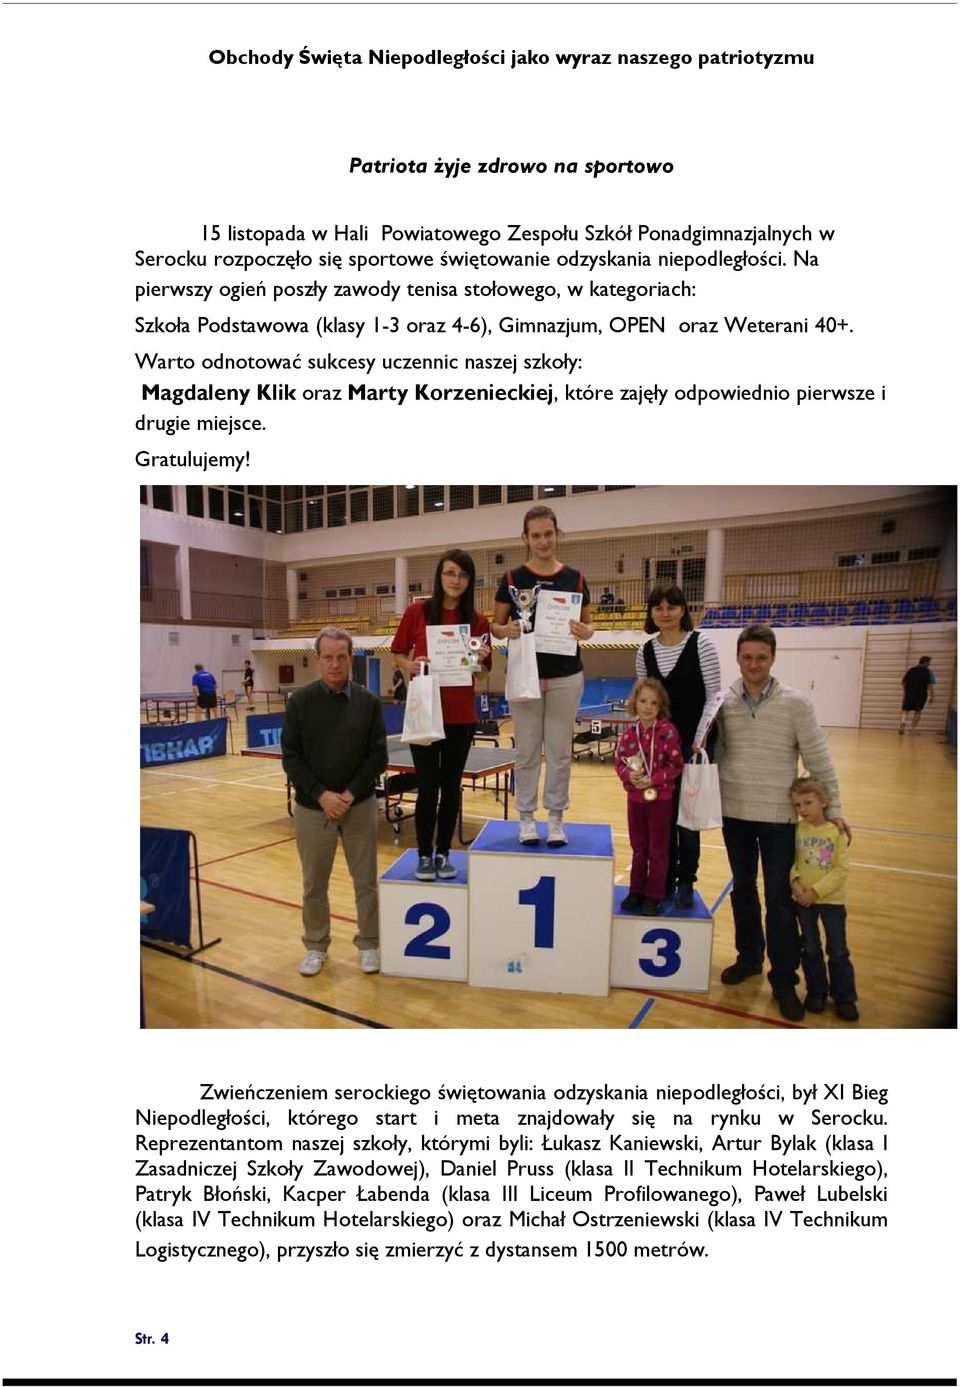 Warto odnotować sukcesy uczennic naszej szkoły: Magdaleny Klik oraz Marty Korzenieckiej, które zajęły odpowiednio pierwsze i drugie miejsce. Gratulujemy!